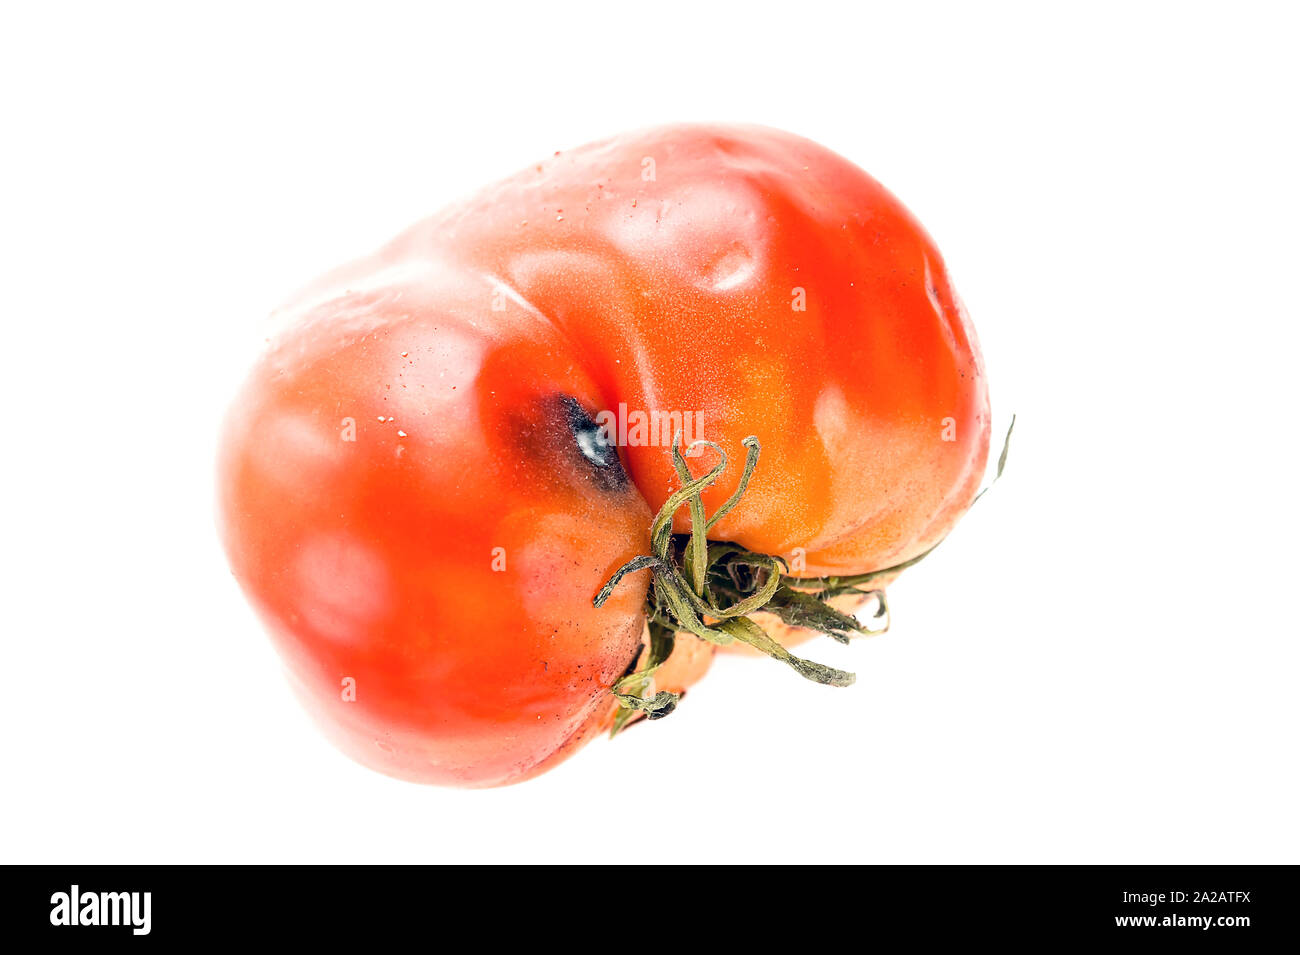 Podrido, mimado tomate con sépalos o cáliz, maduración desigual de molde y manchas en la piel aislado sobre fondo blanco. Foto de stock